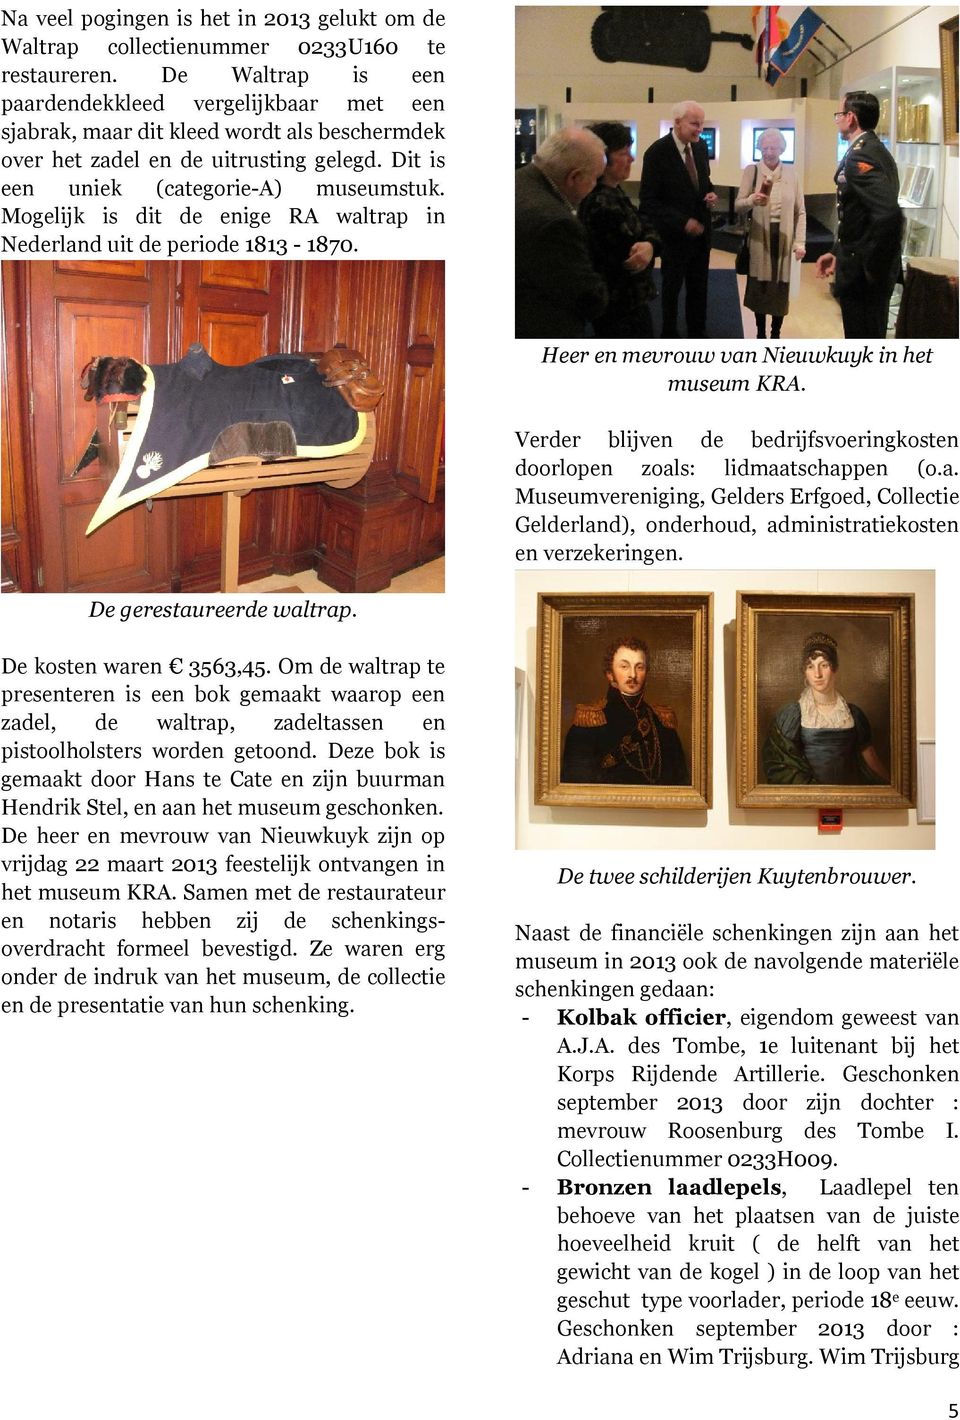 Mogelijk is dit de enige RA waltrap in Nederland uit de periode 1813-1870. Heer en mevrouw van Nieuwkuyk in het museum KRA. Verder blijven de bedrijfsvoeringkosten doorlopen zoals: lidmaatschappen (o.